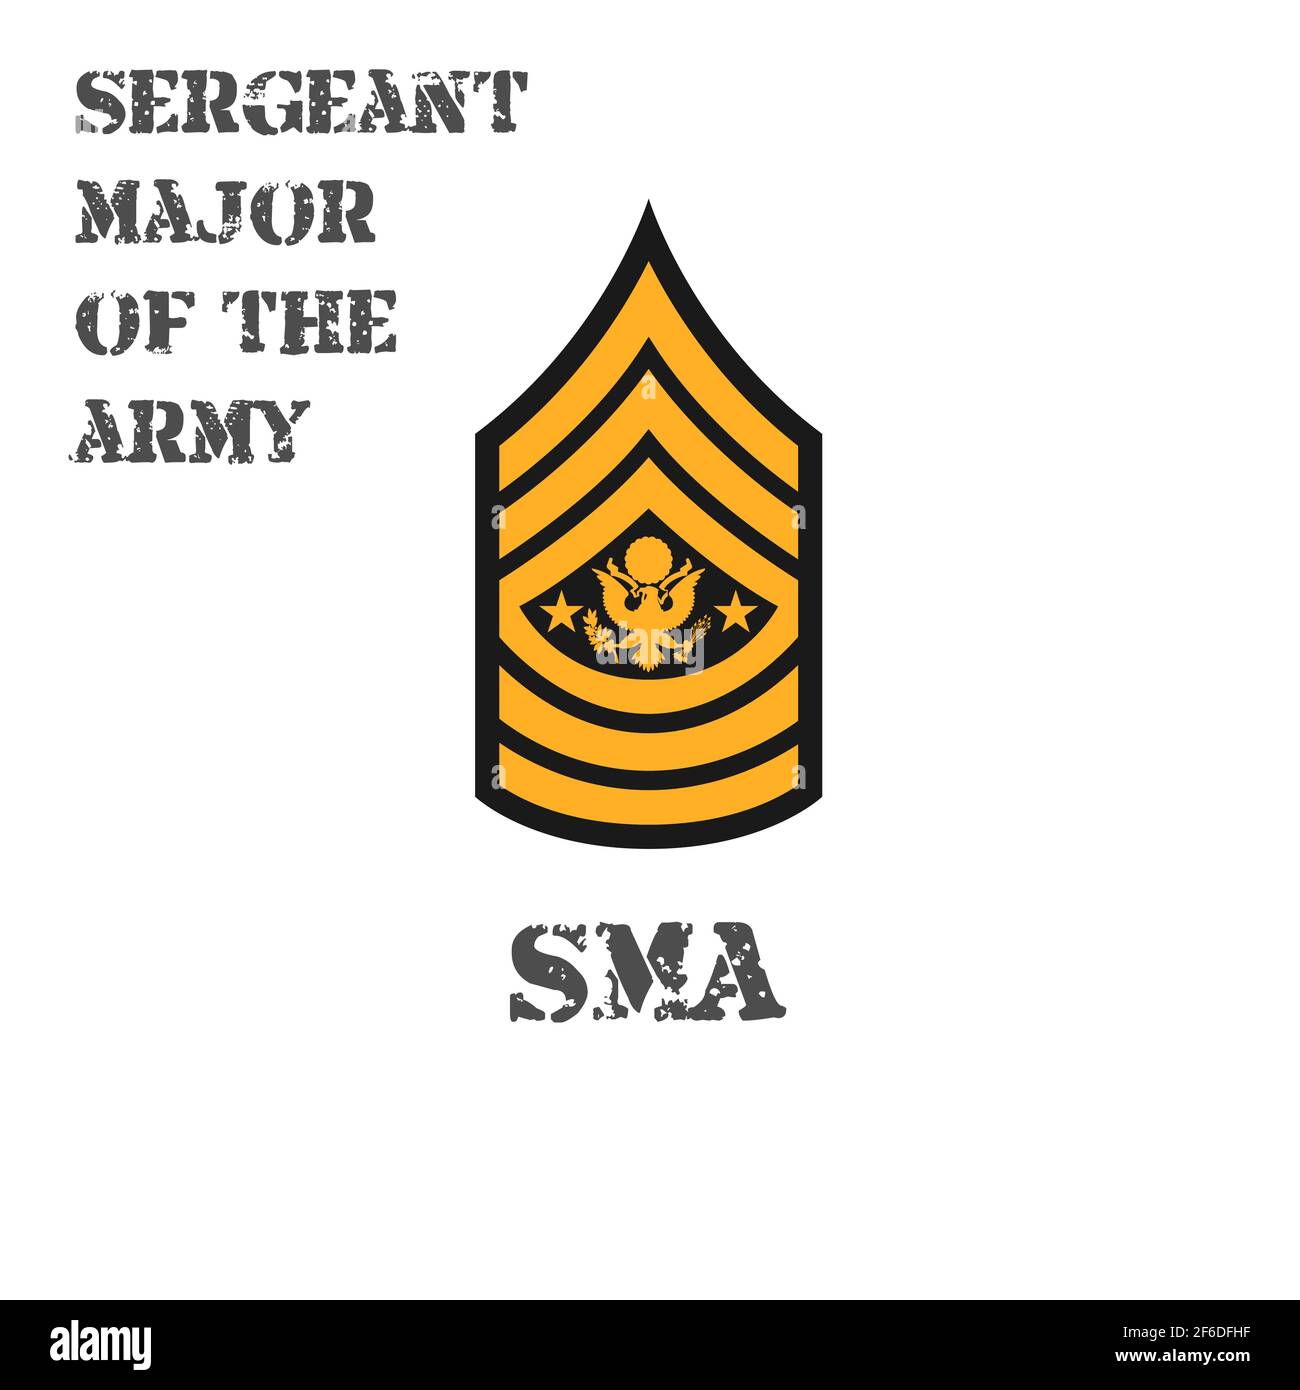 Icona vettoriale realistica del chevron di un sergente maggiore dell'esercito degli Stati Uniti. Descrizione e nome abbreviato. Illustrazione Vettoriale